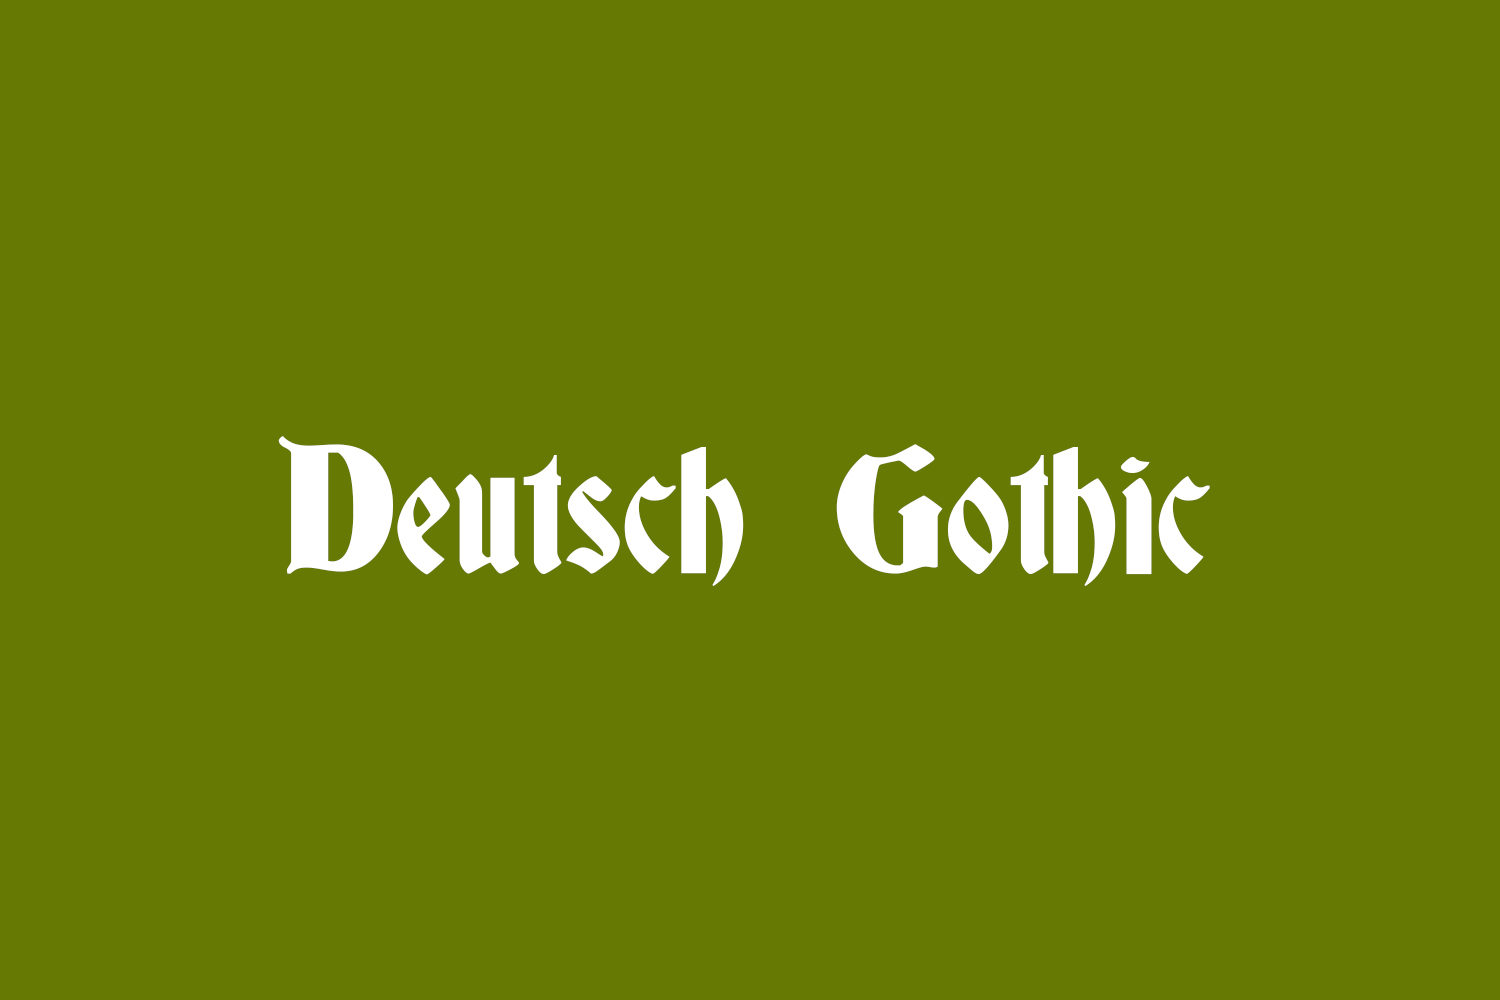 Deutsch Gothic